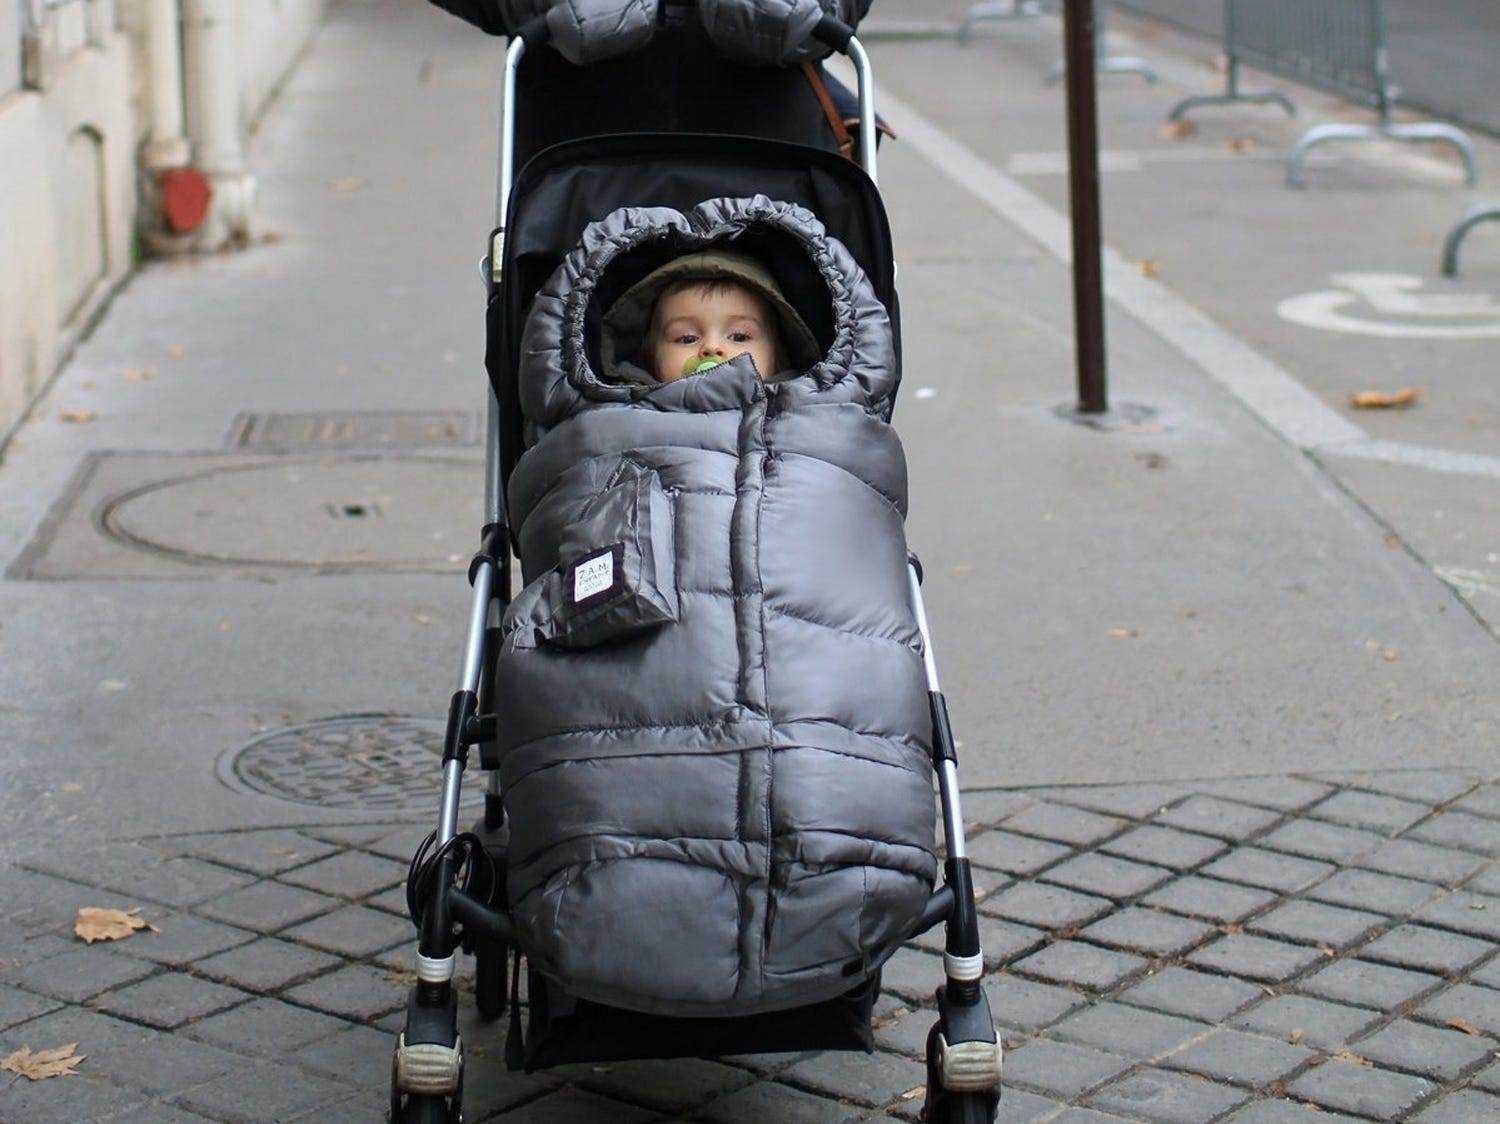 Kind in Kinderwagen-Fußsack eingepackt